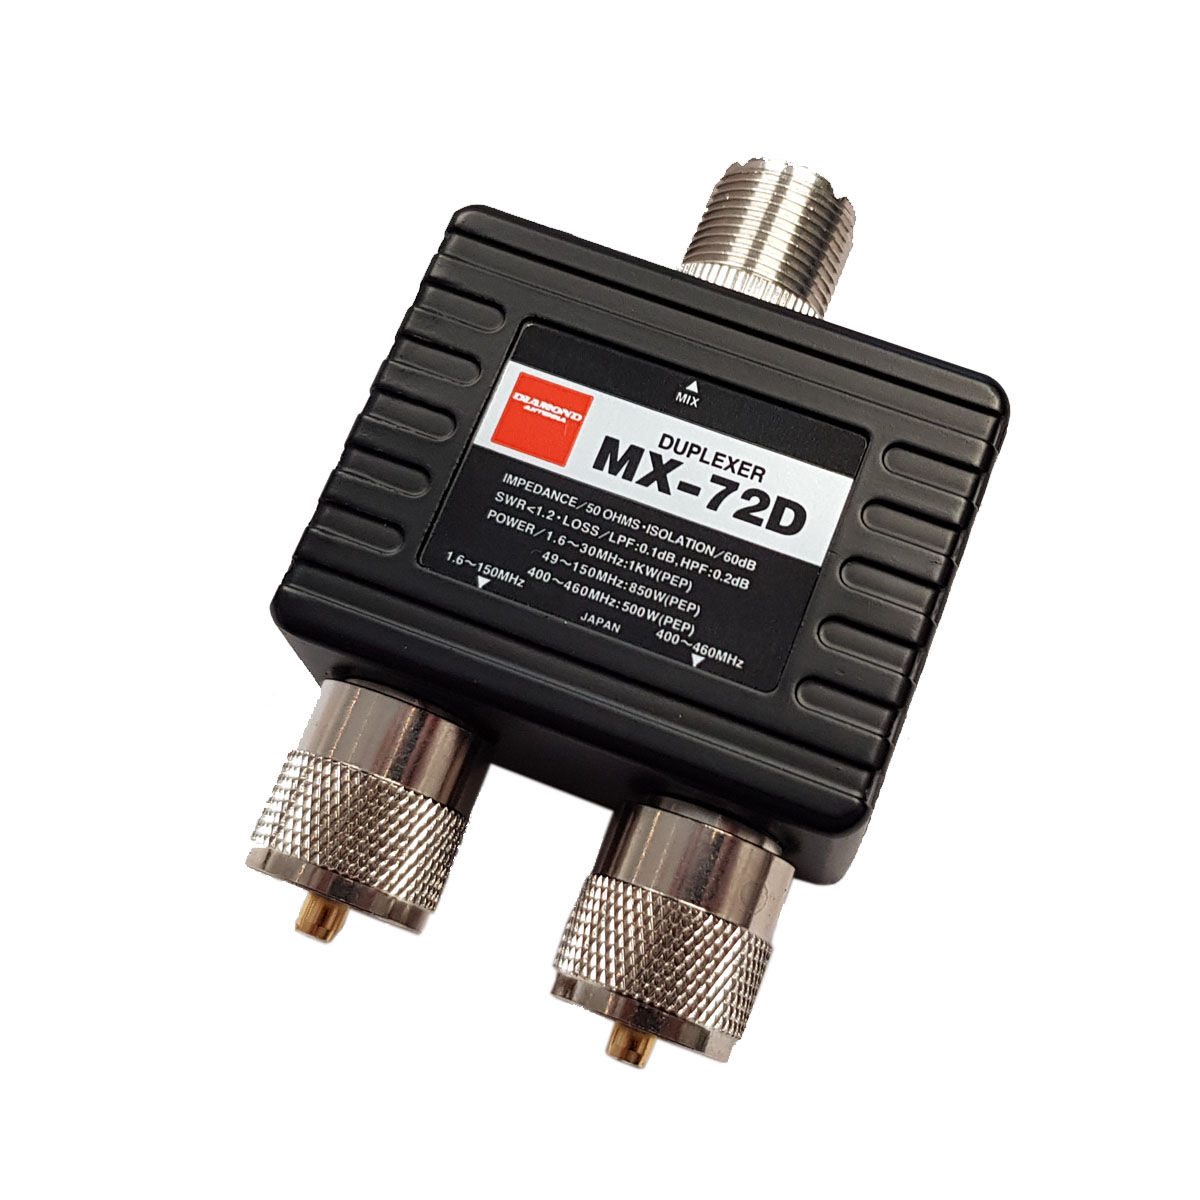 Diamond MX-72D Diplexer 1.6-150/400-460 MHz